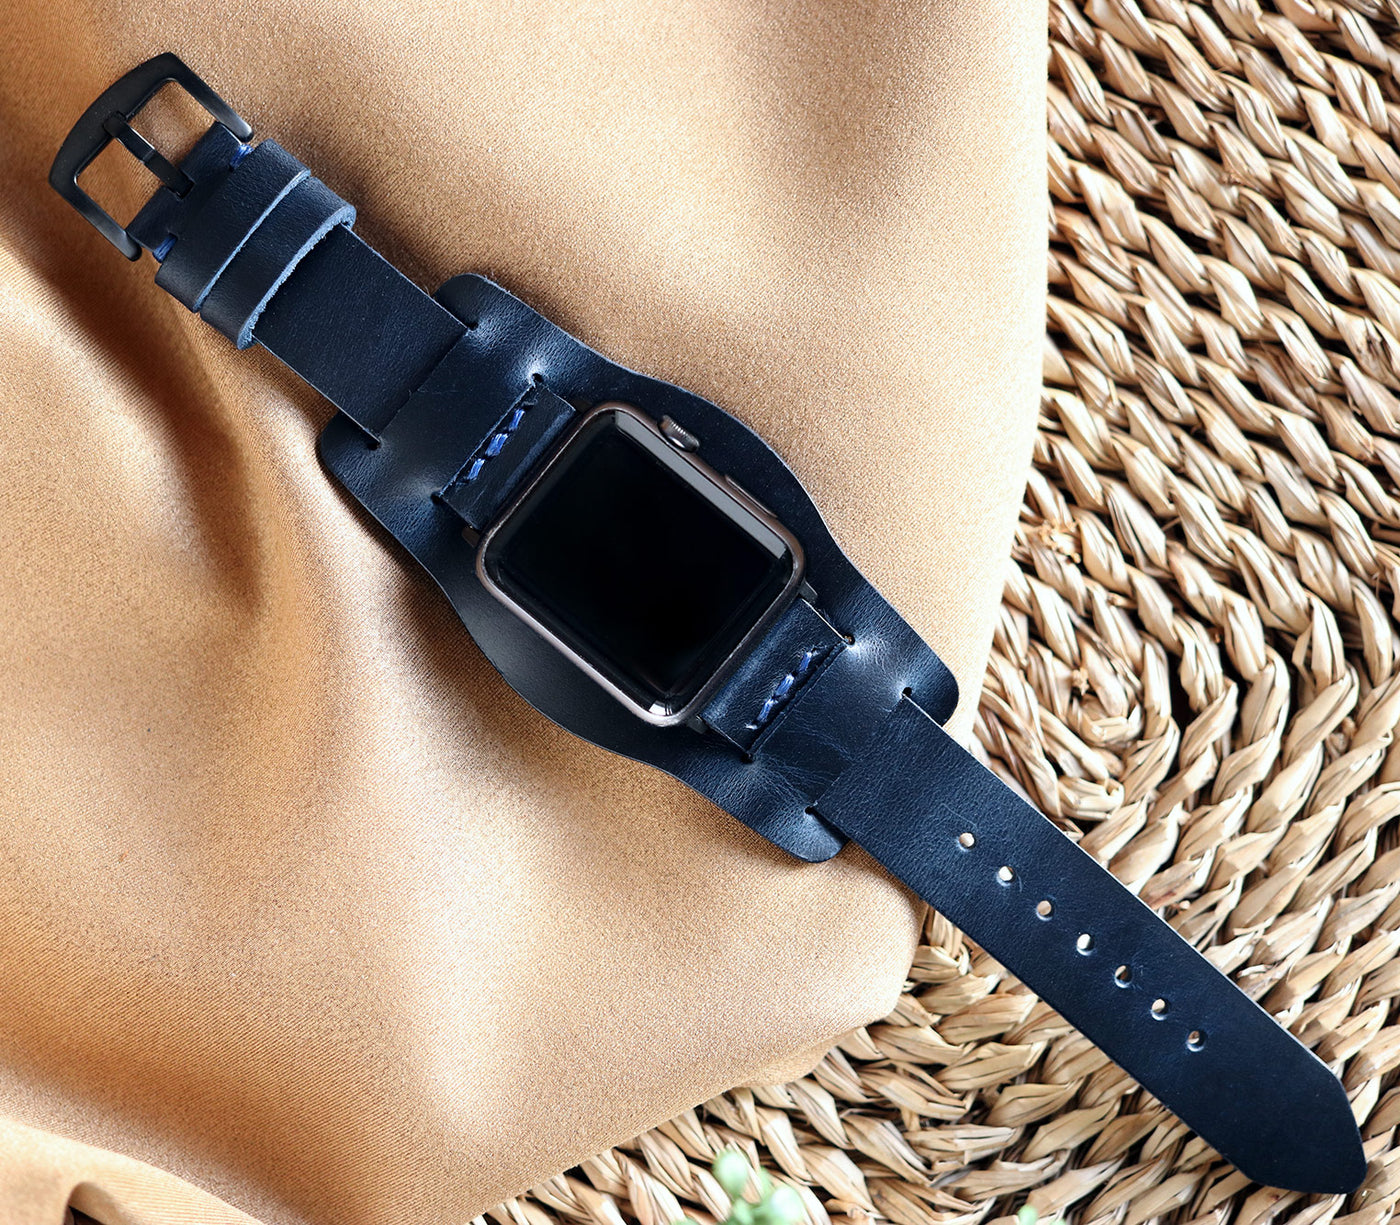 Apple Watch Minimal Bund Strap - Indigo Blue